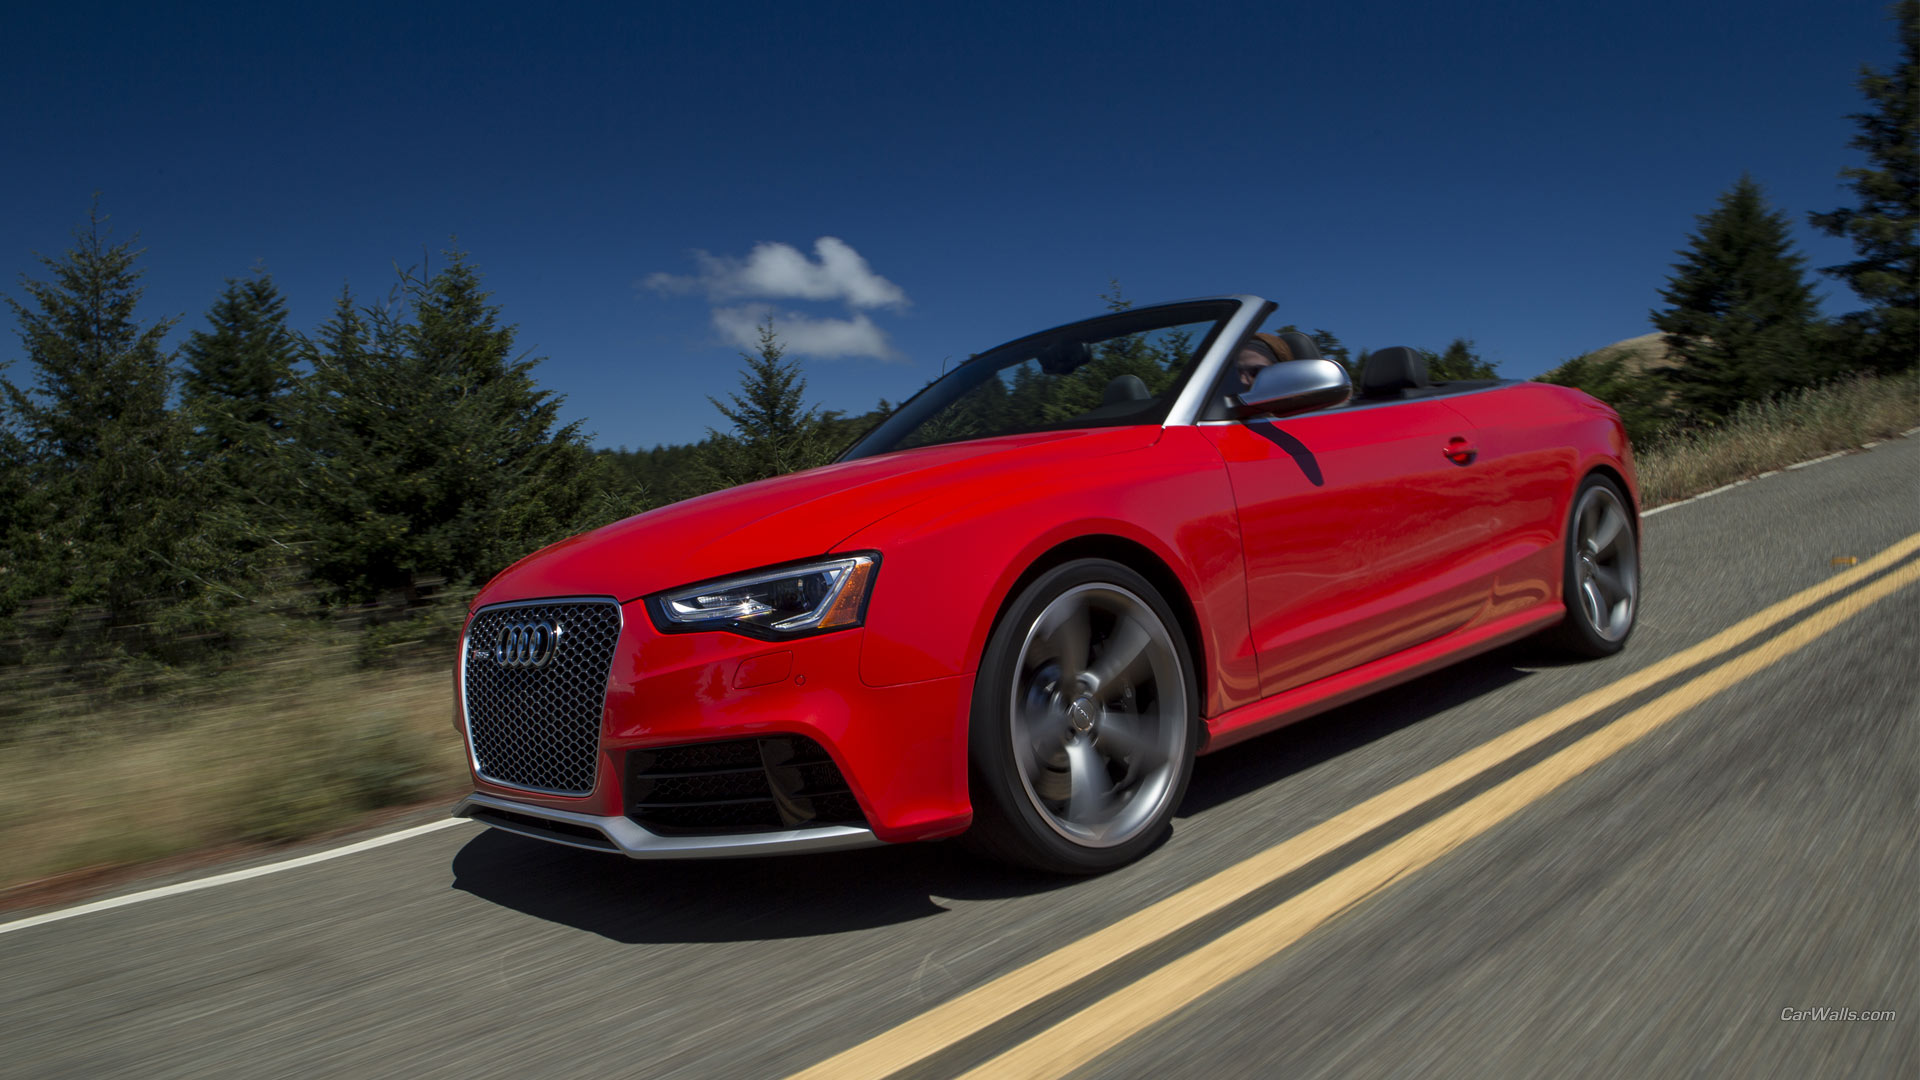 Descarga gratis la imagen Audi, Audi Rs5, Vehículos en el escritorio de tu PC